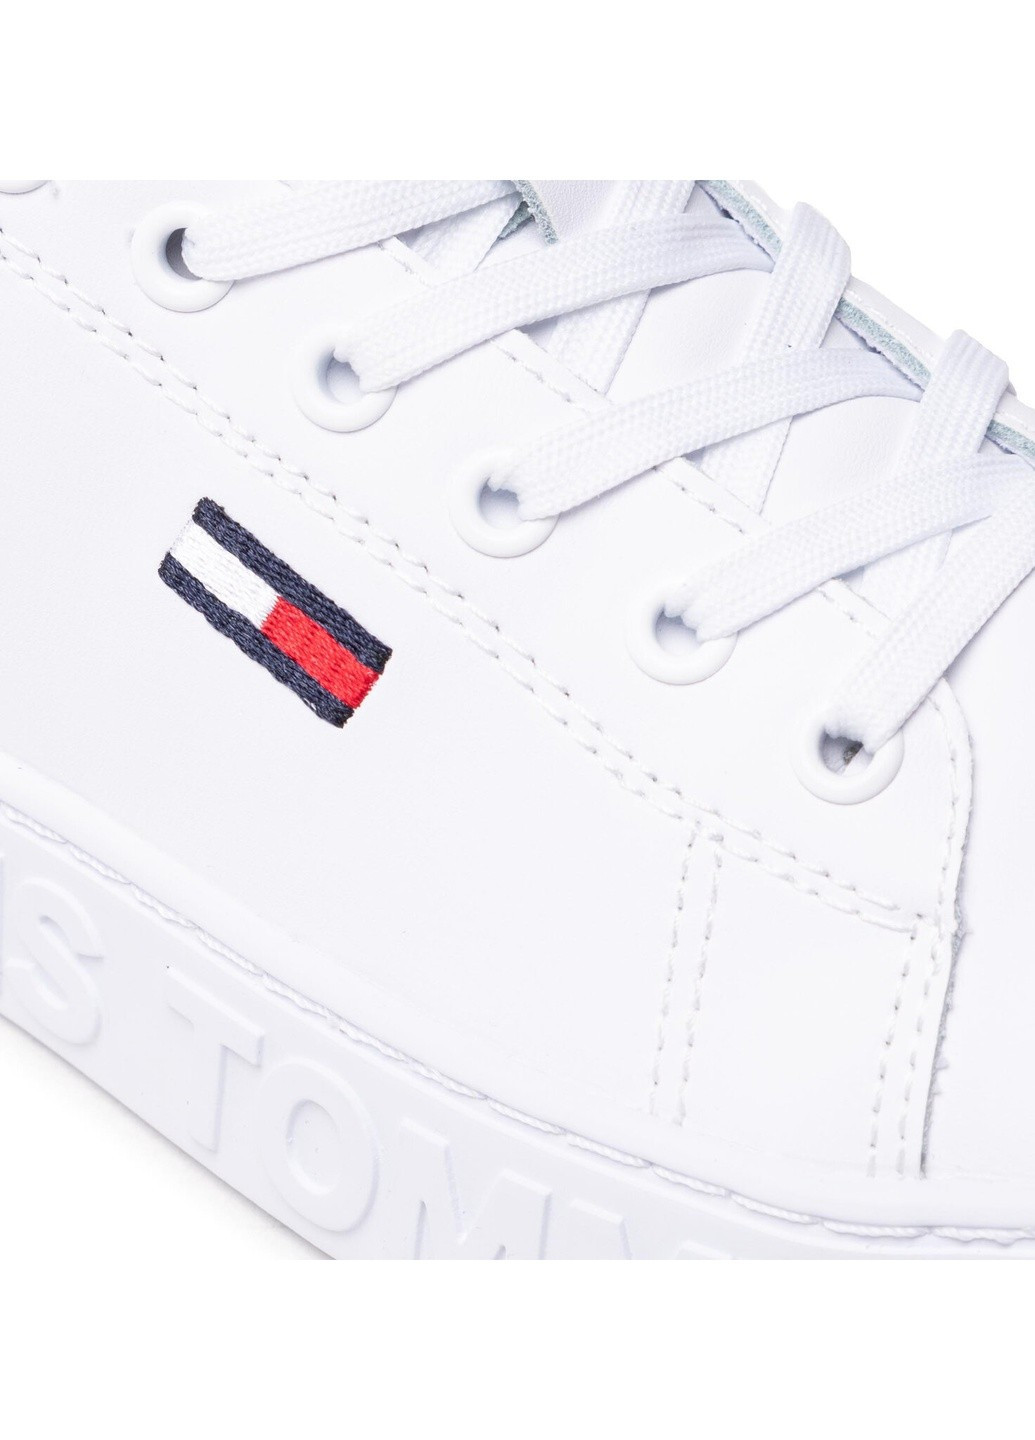 Белые демисезонные кроссовки Tommy Jeans